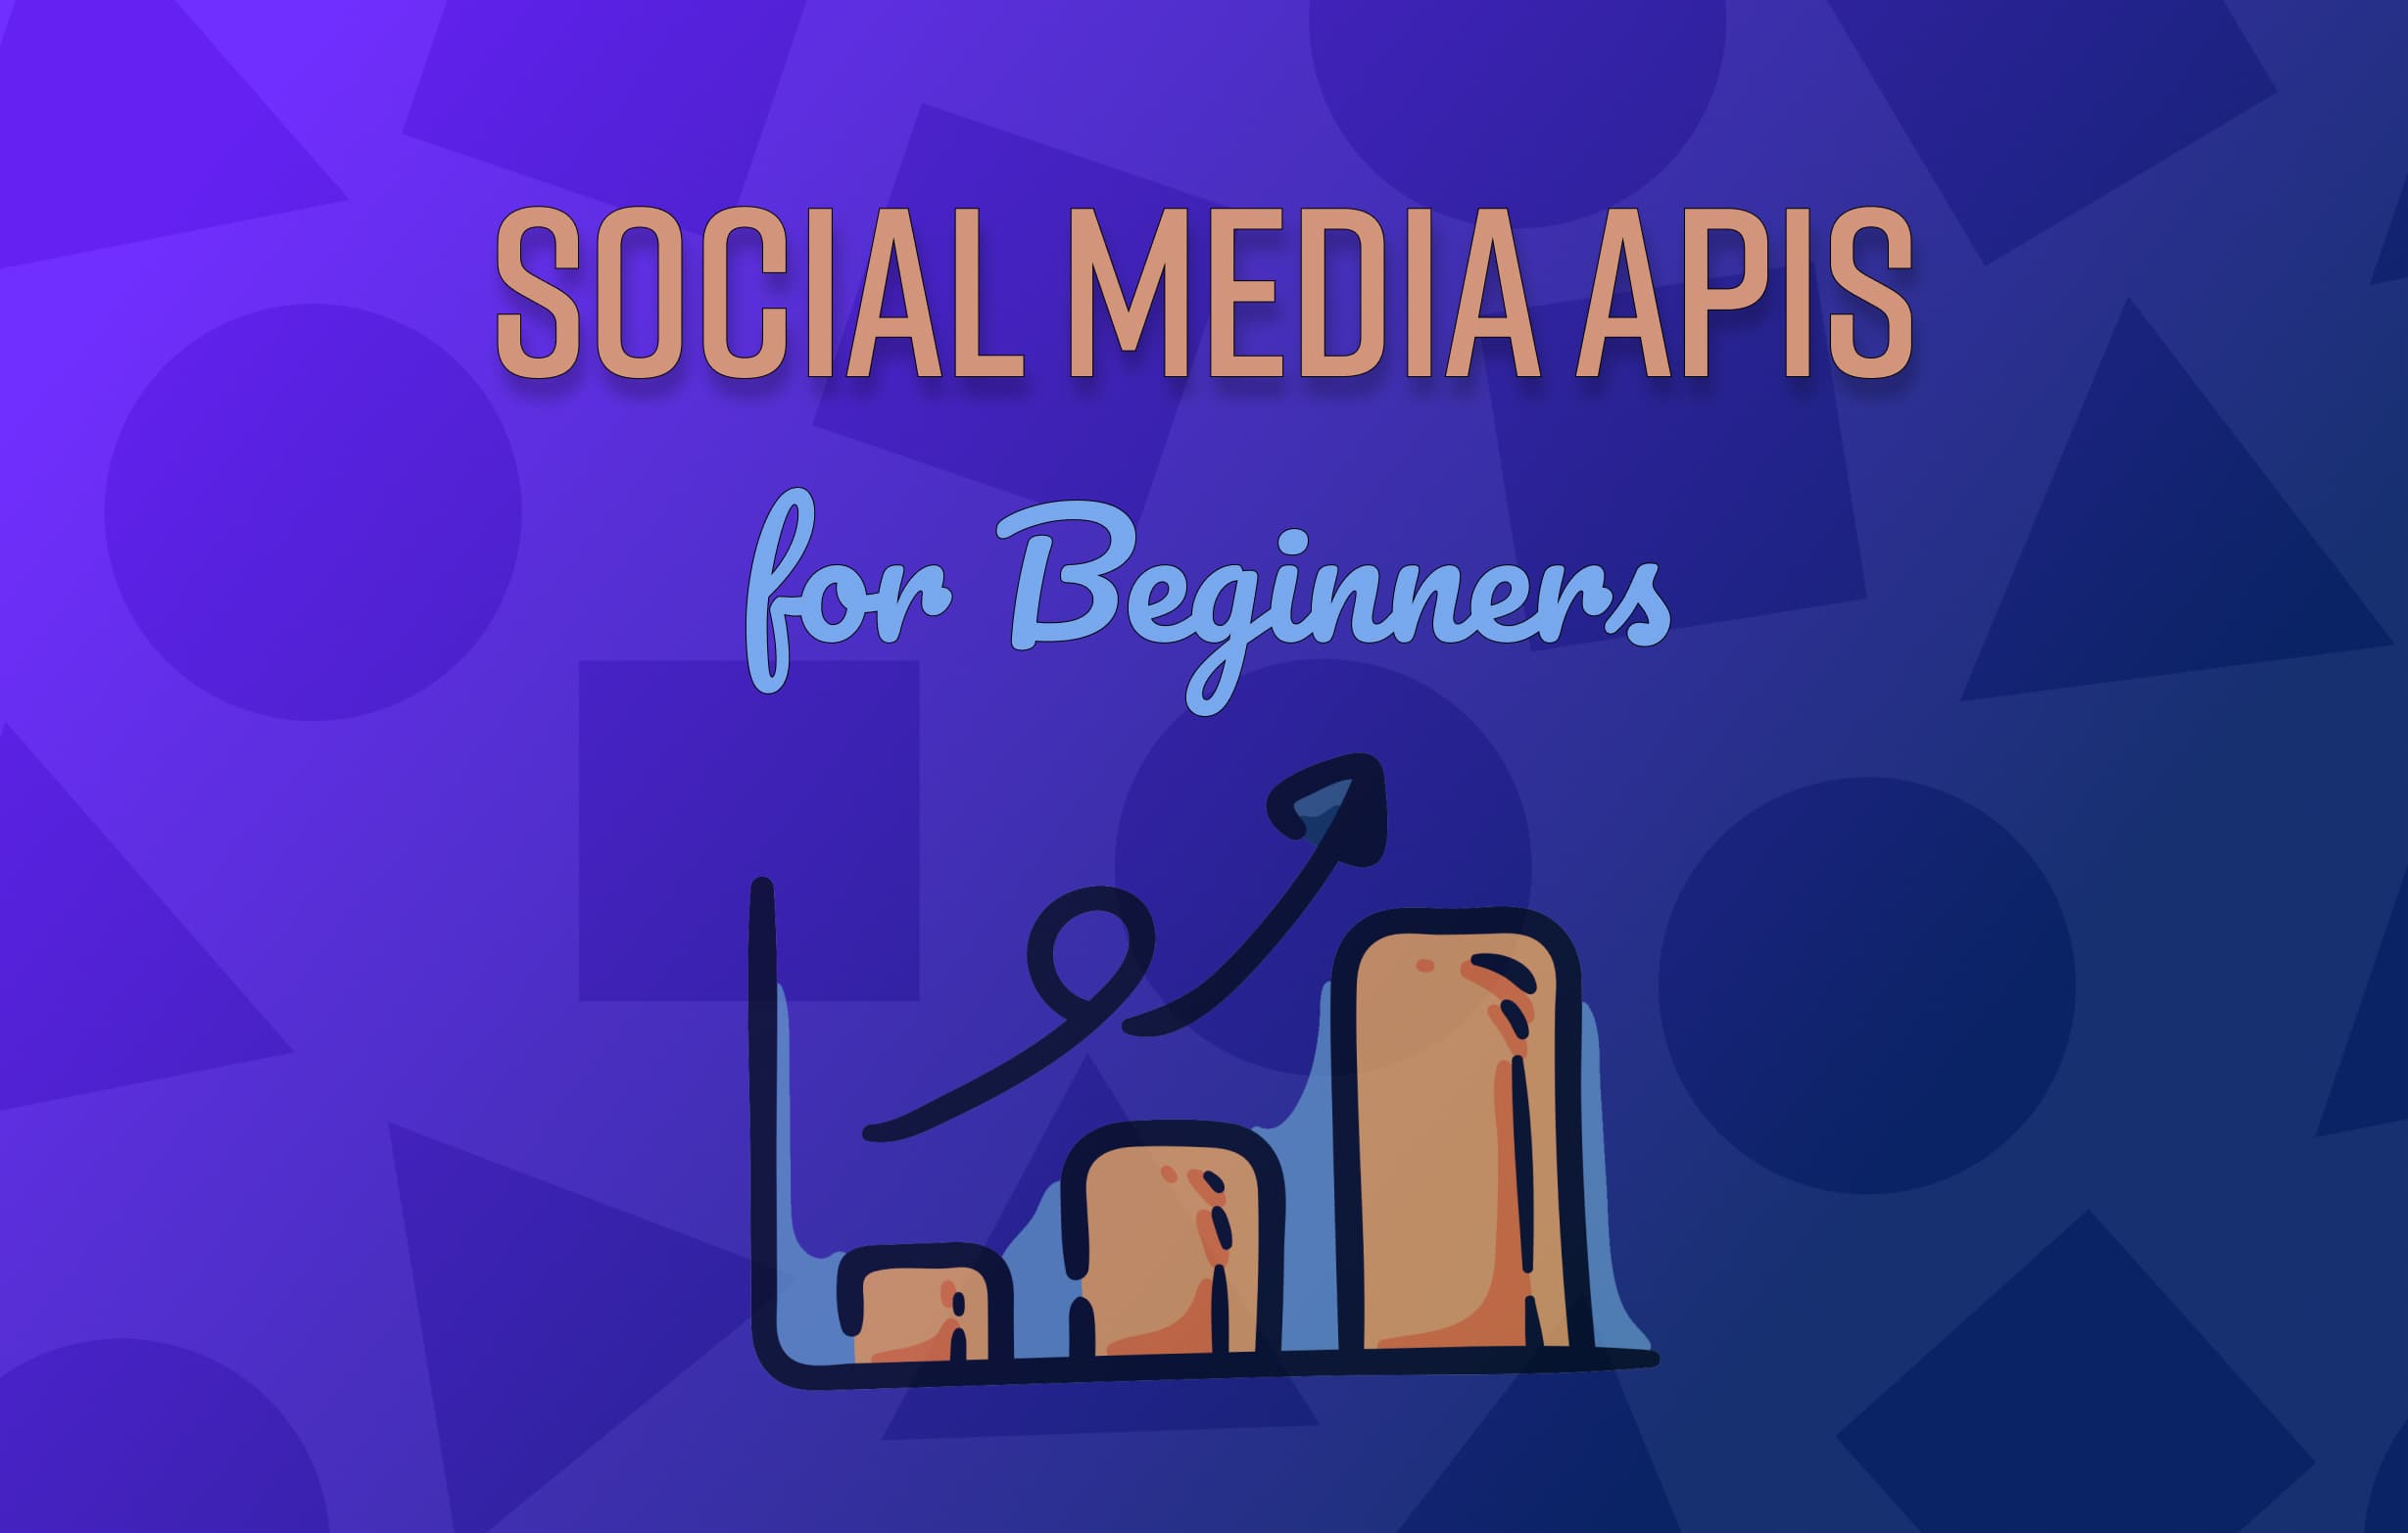 Social Media APIs for Beginners